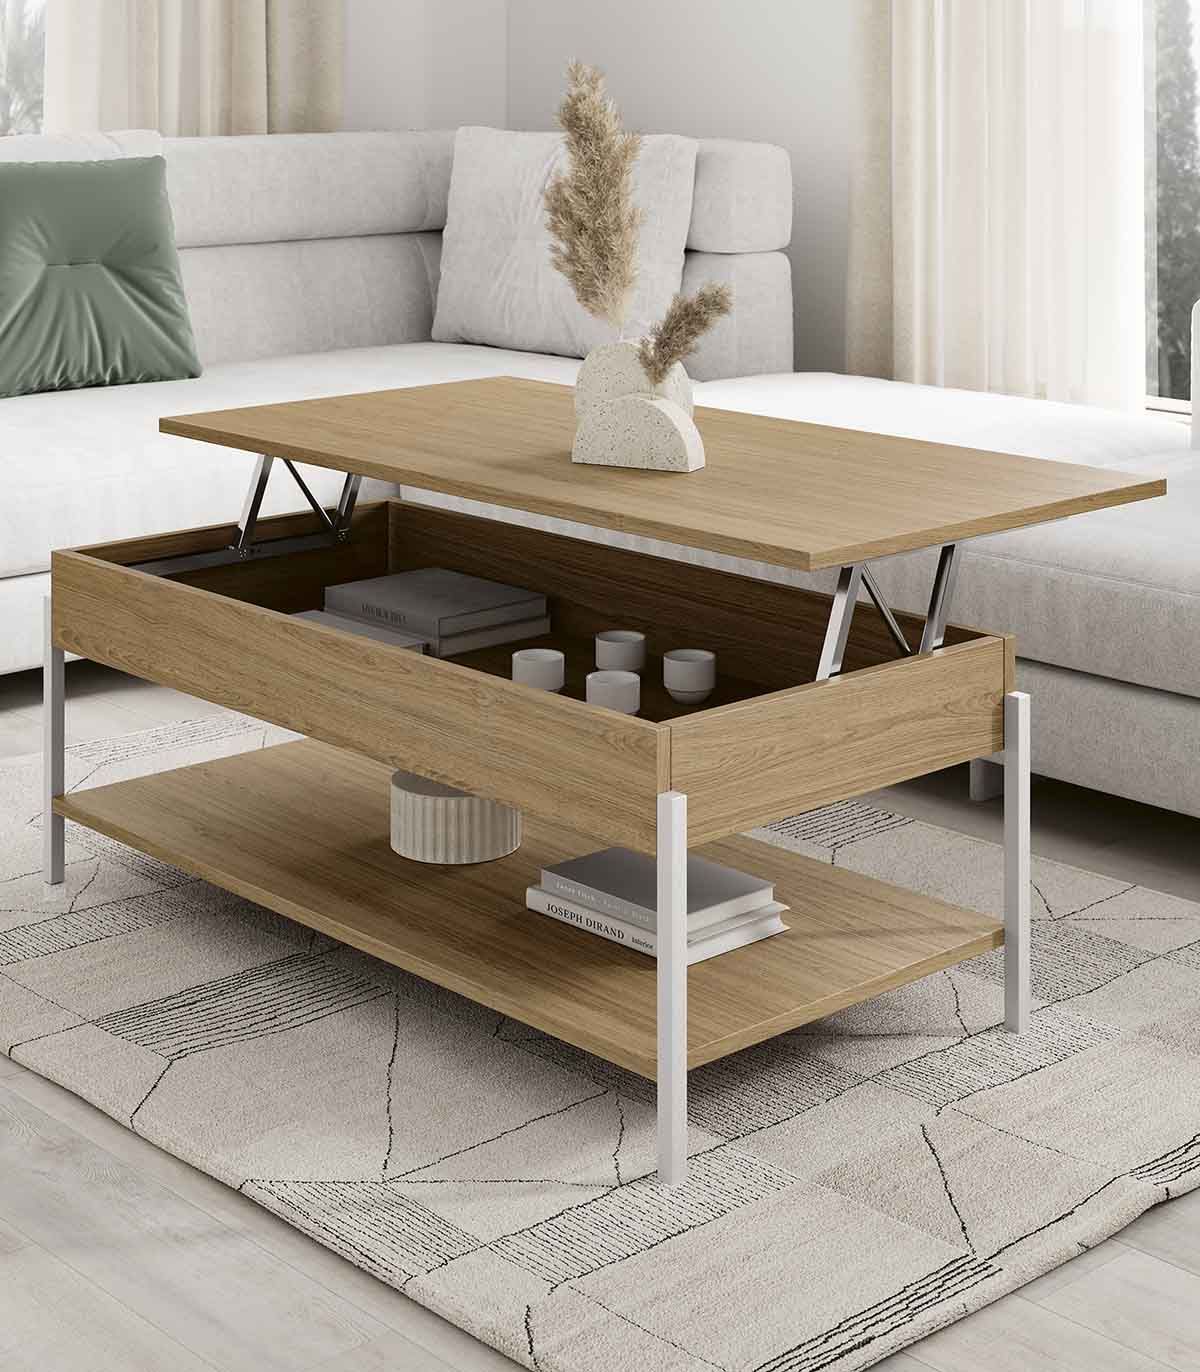 https://www.decoracionbeltran.com/59727-superlarge_default/mesa-de-centro-elevable-en-madera-y-metal-francia.jpg